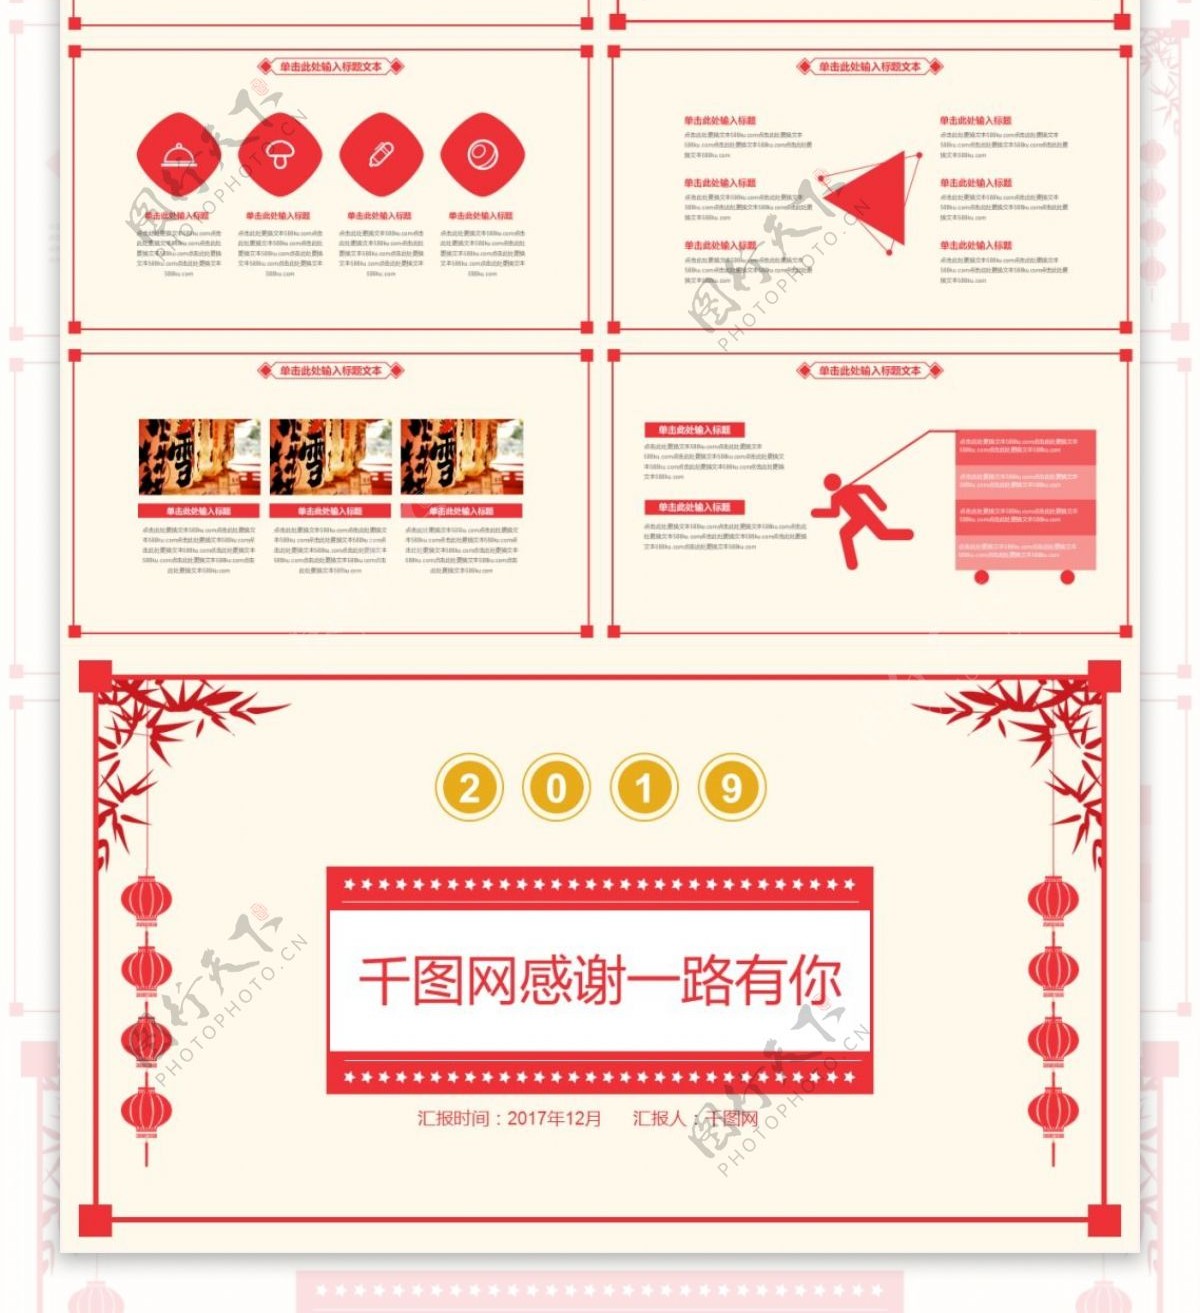 红色喜庆中国风新年工作通用PPT模板